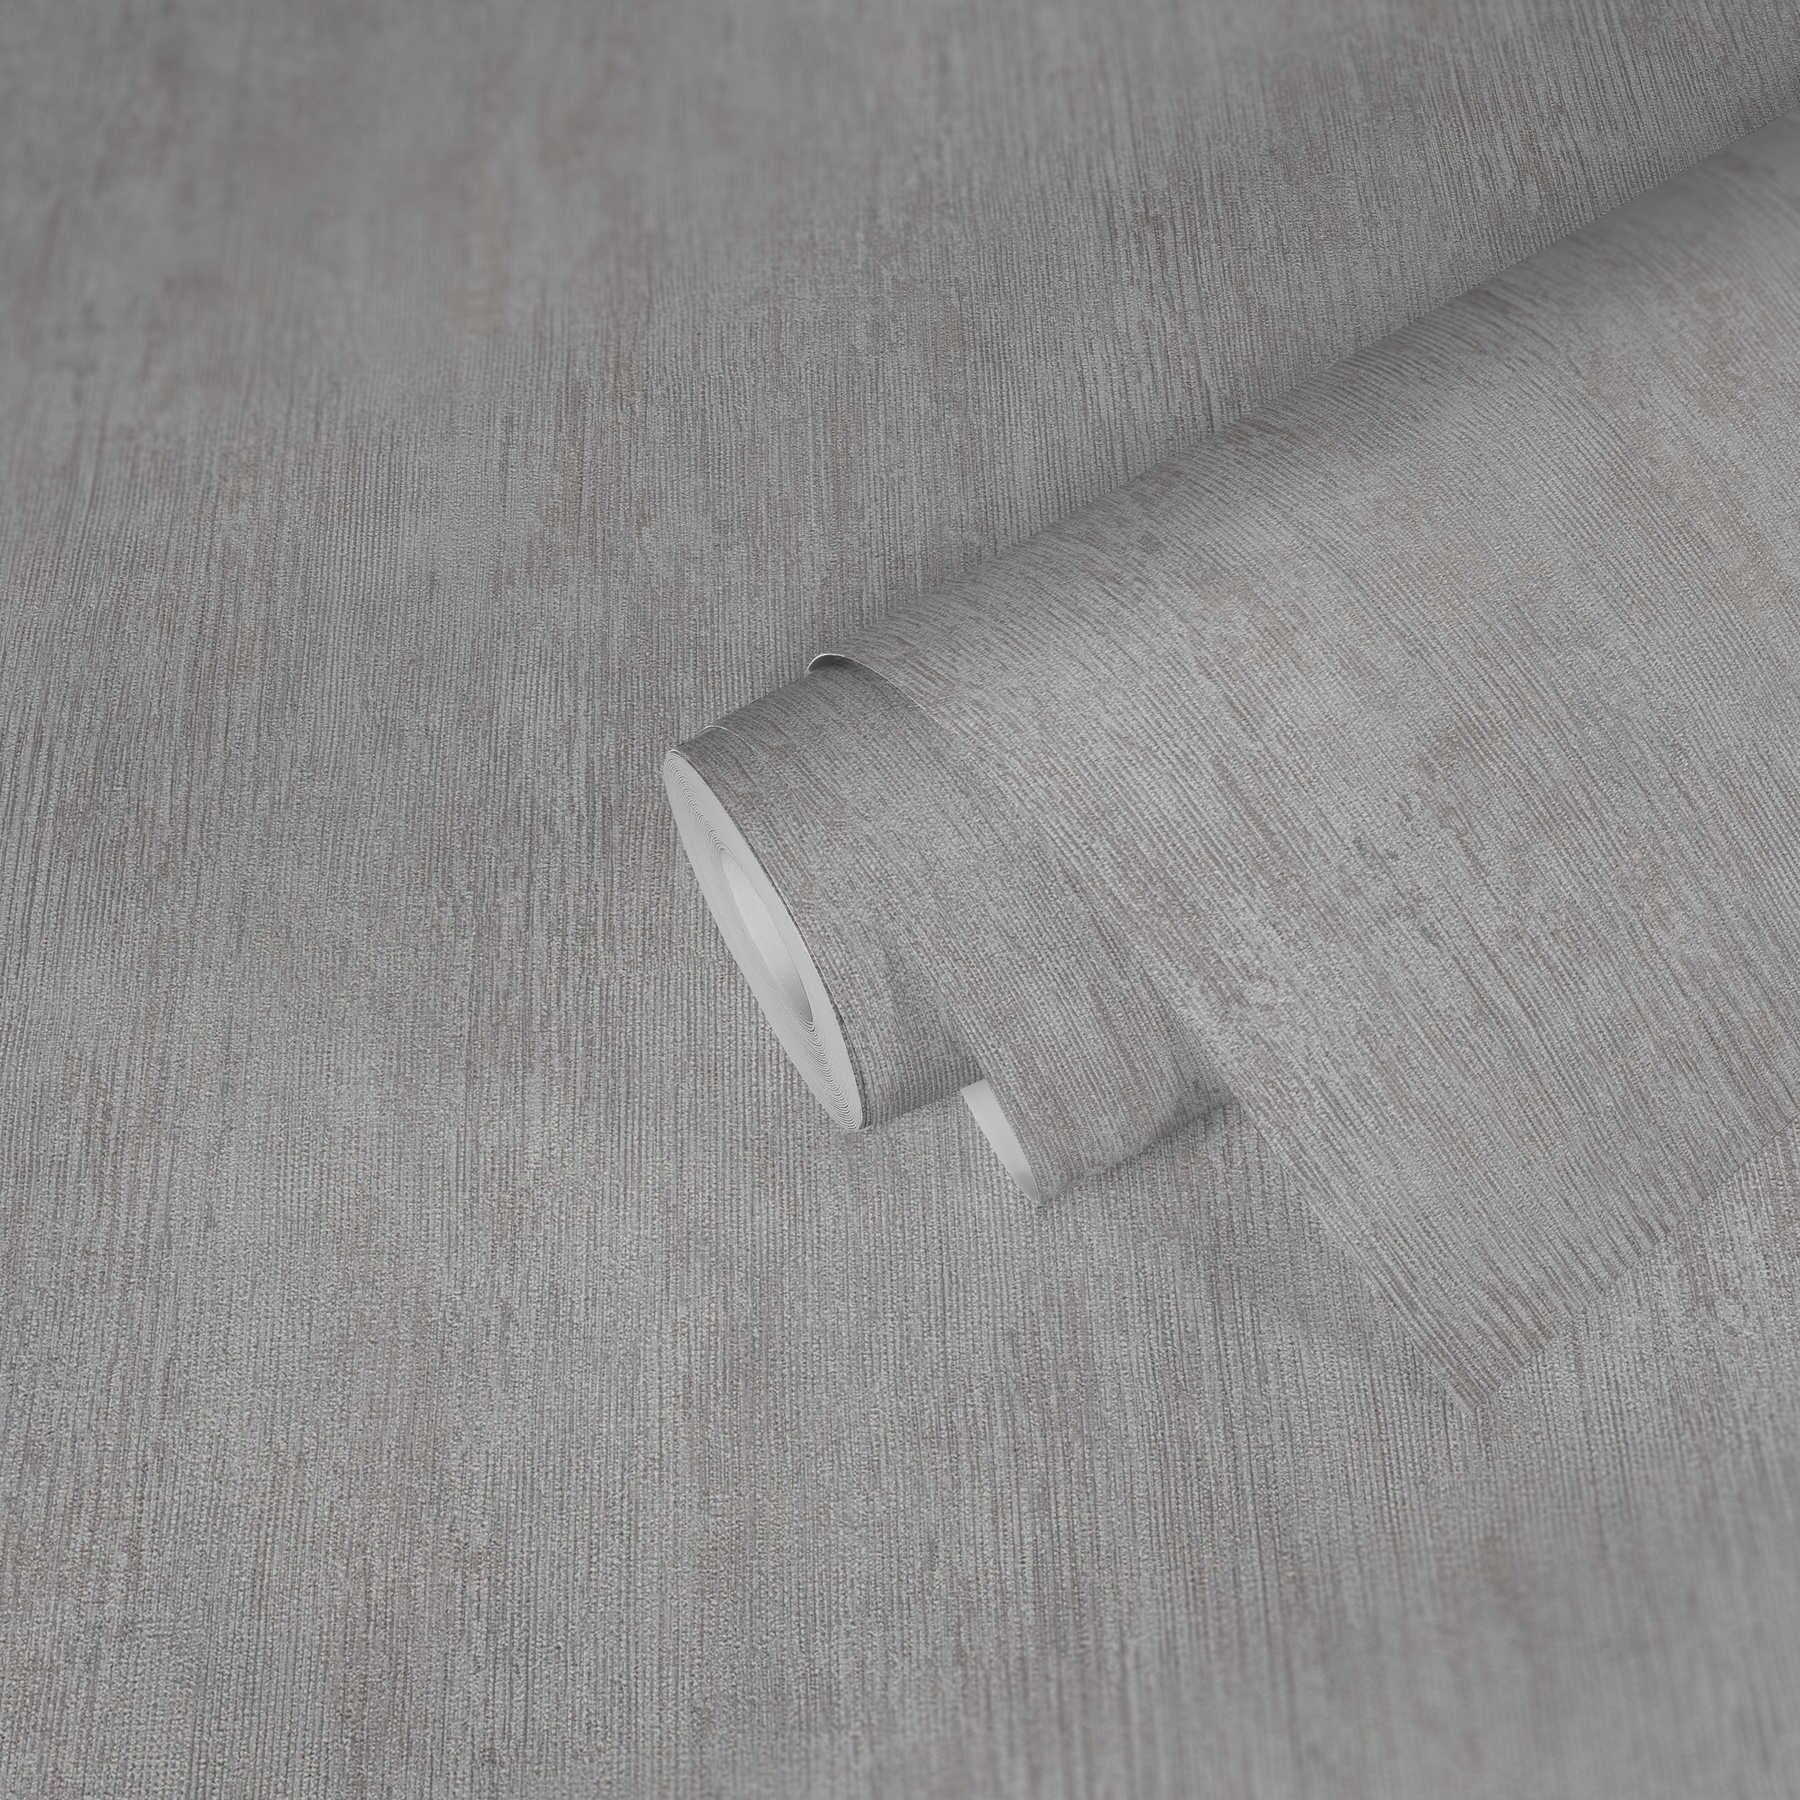             Unitapete Riefen-Design, Industrial Style – Grau, Weiß
        